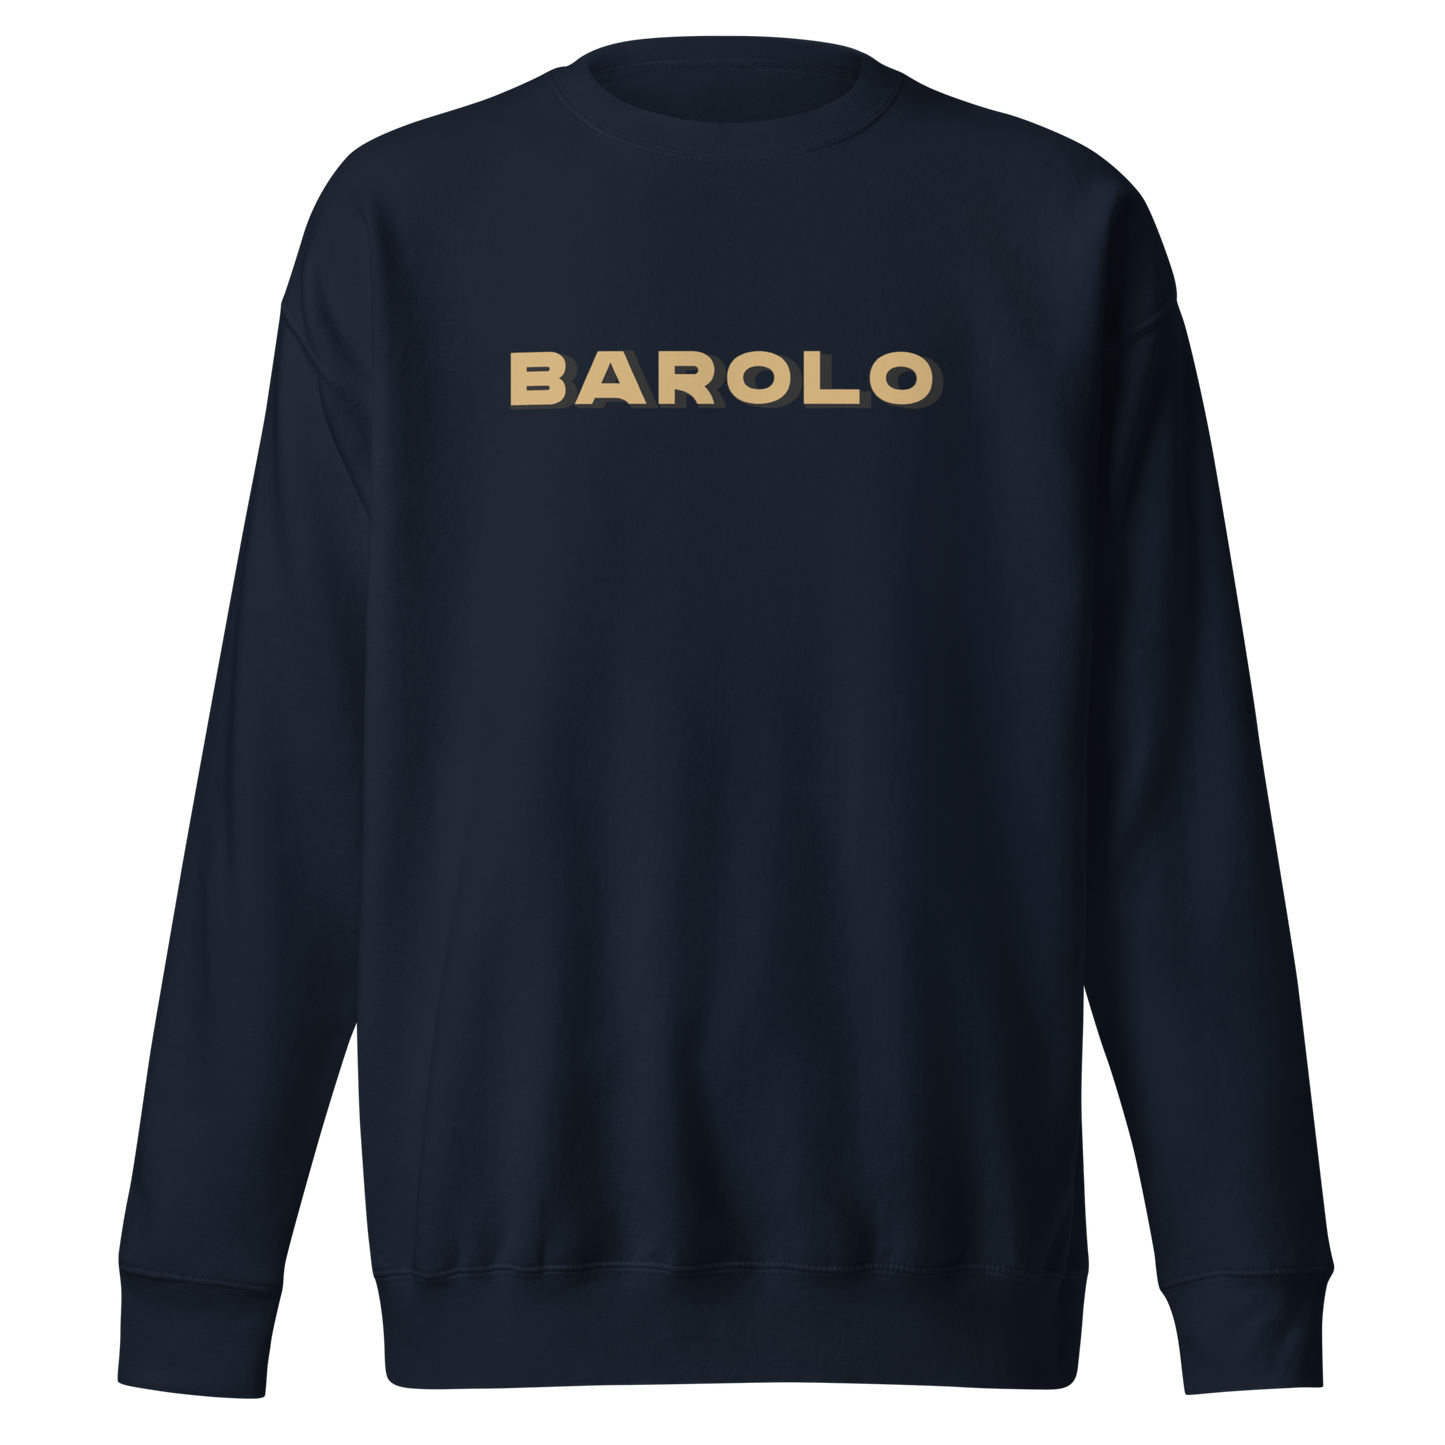 Barolo sweatshirt